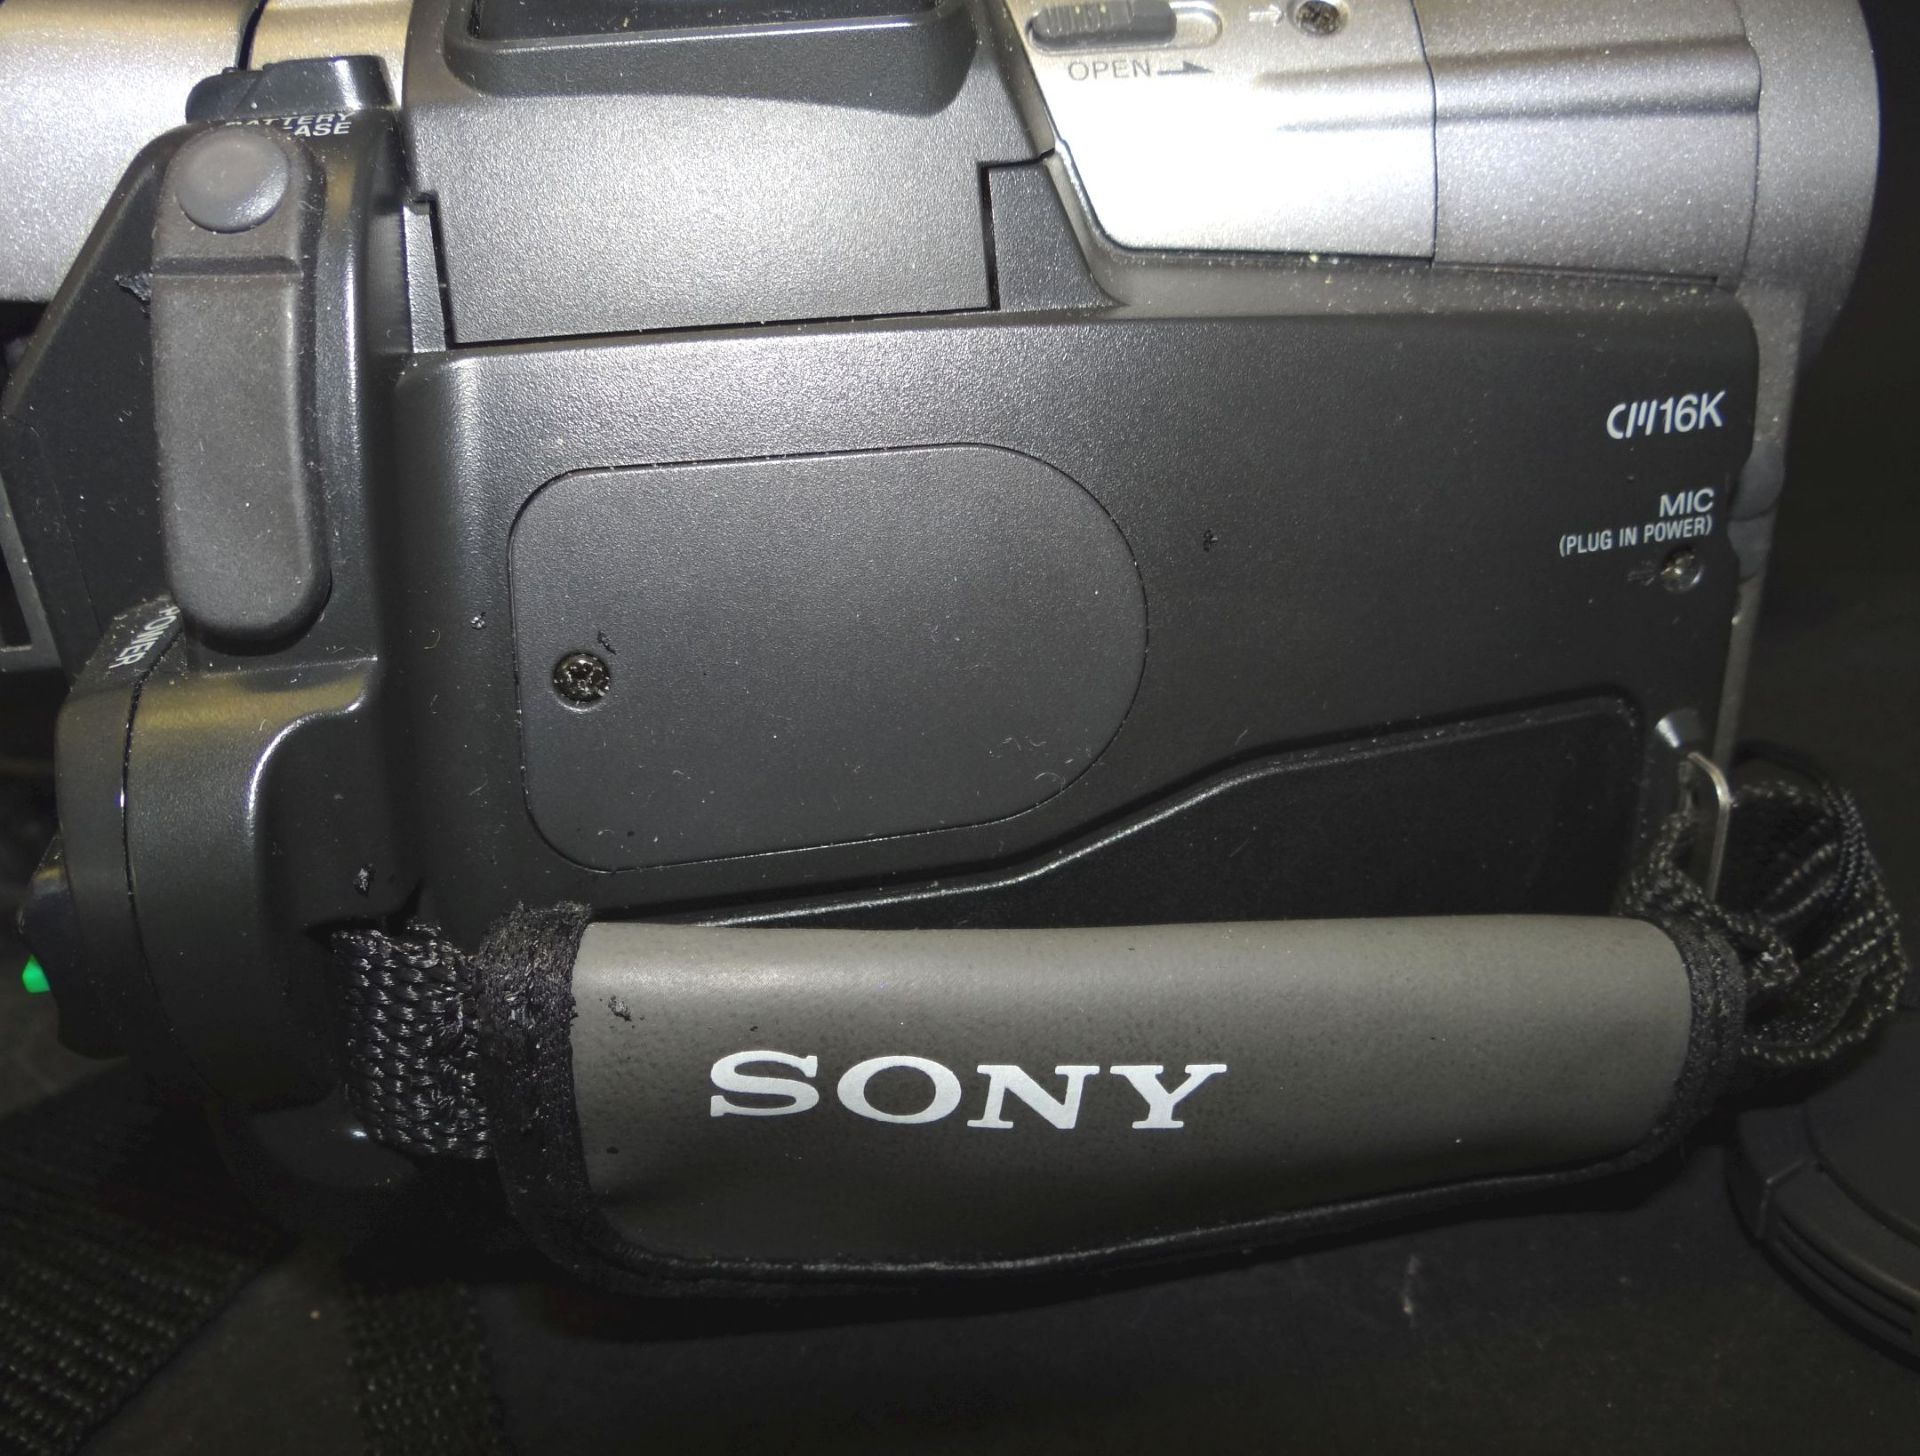 Sony Handycam Vision Mini DV in Tasche, optisch gut erhalten - Bild 2 aus 5